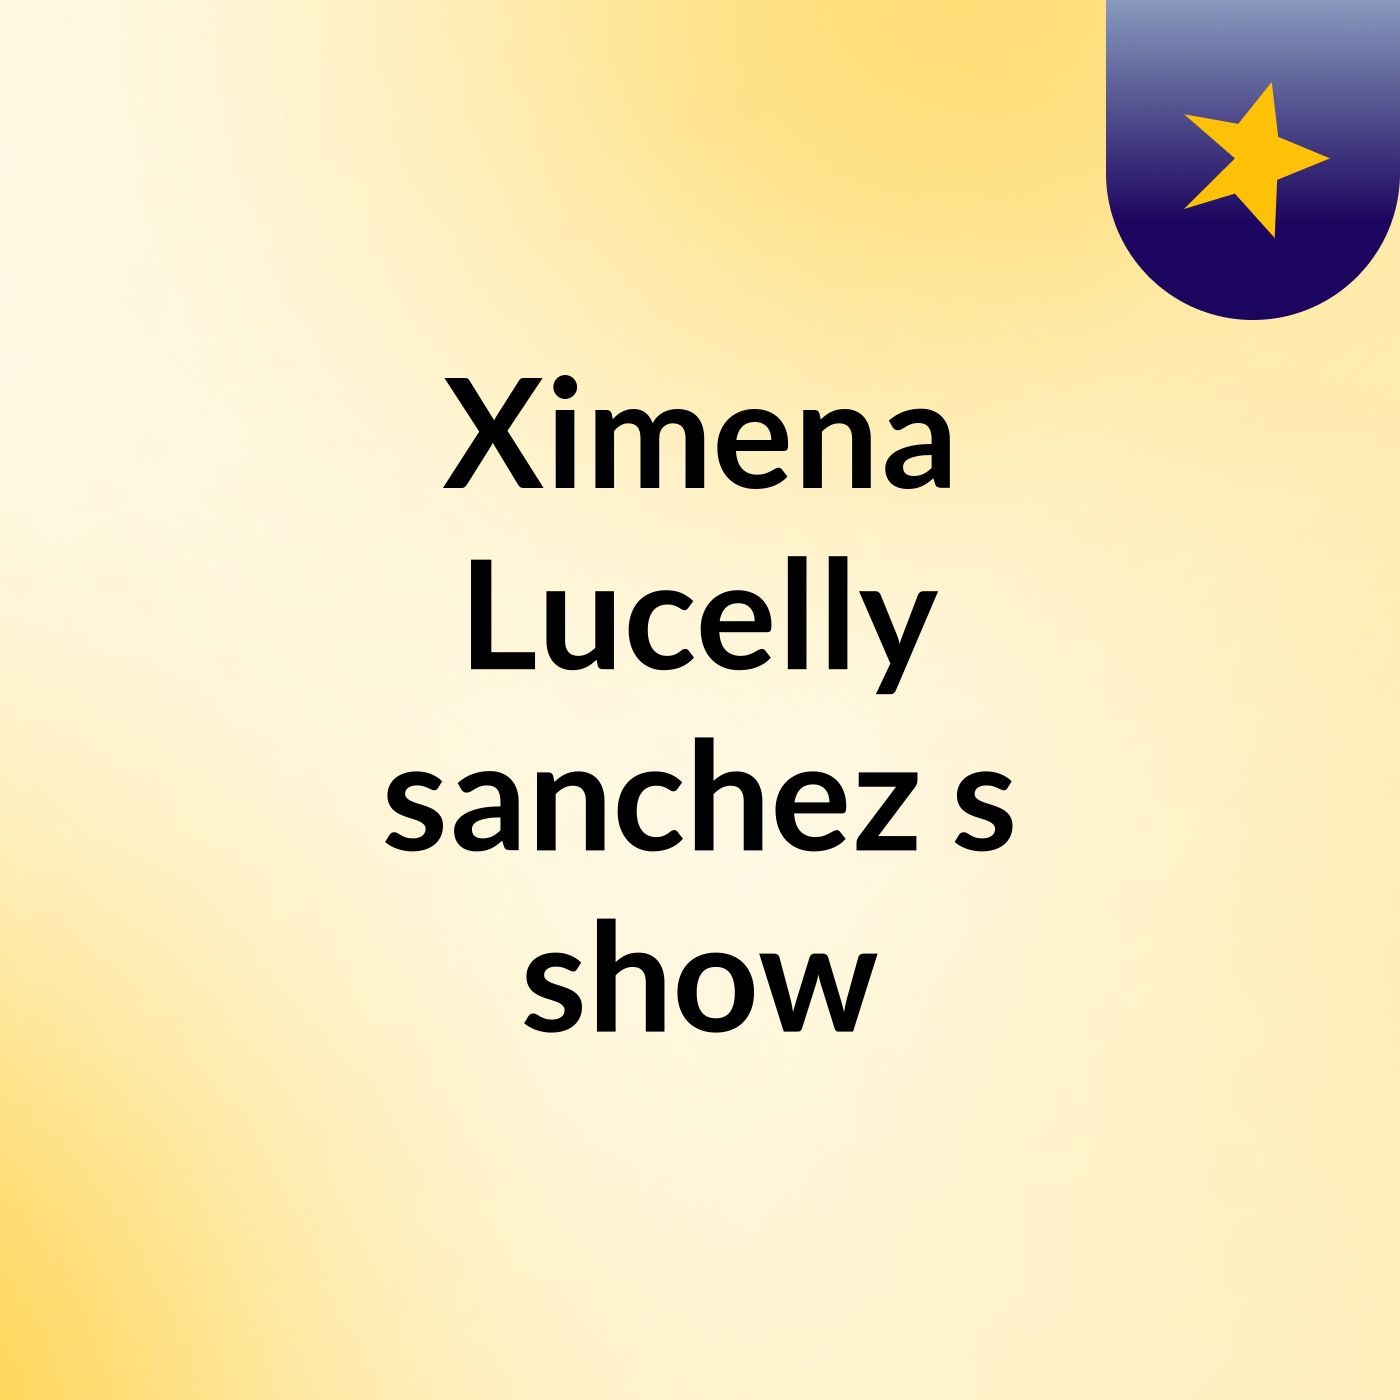 Ximena Lucelly sanchez's show